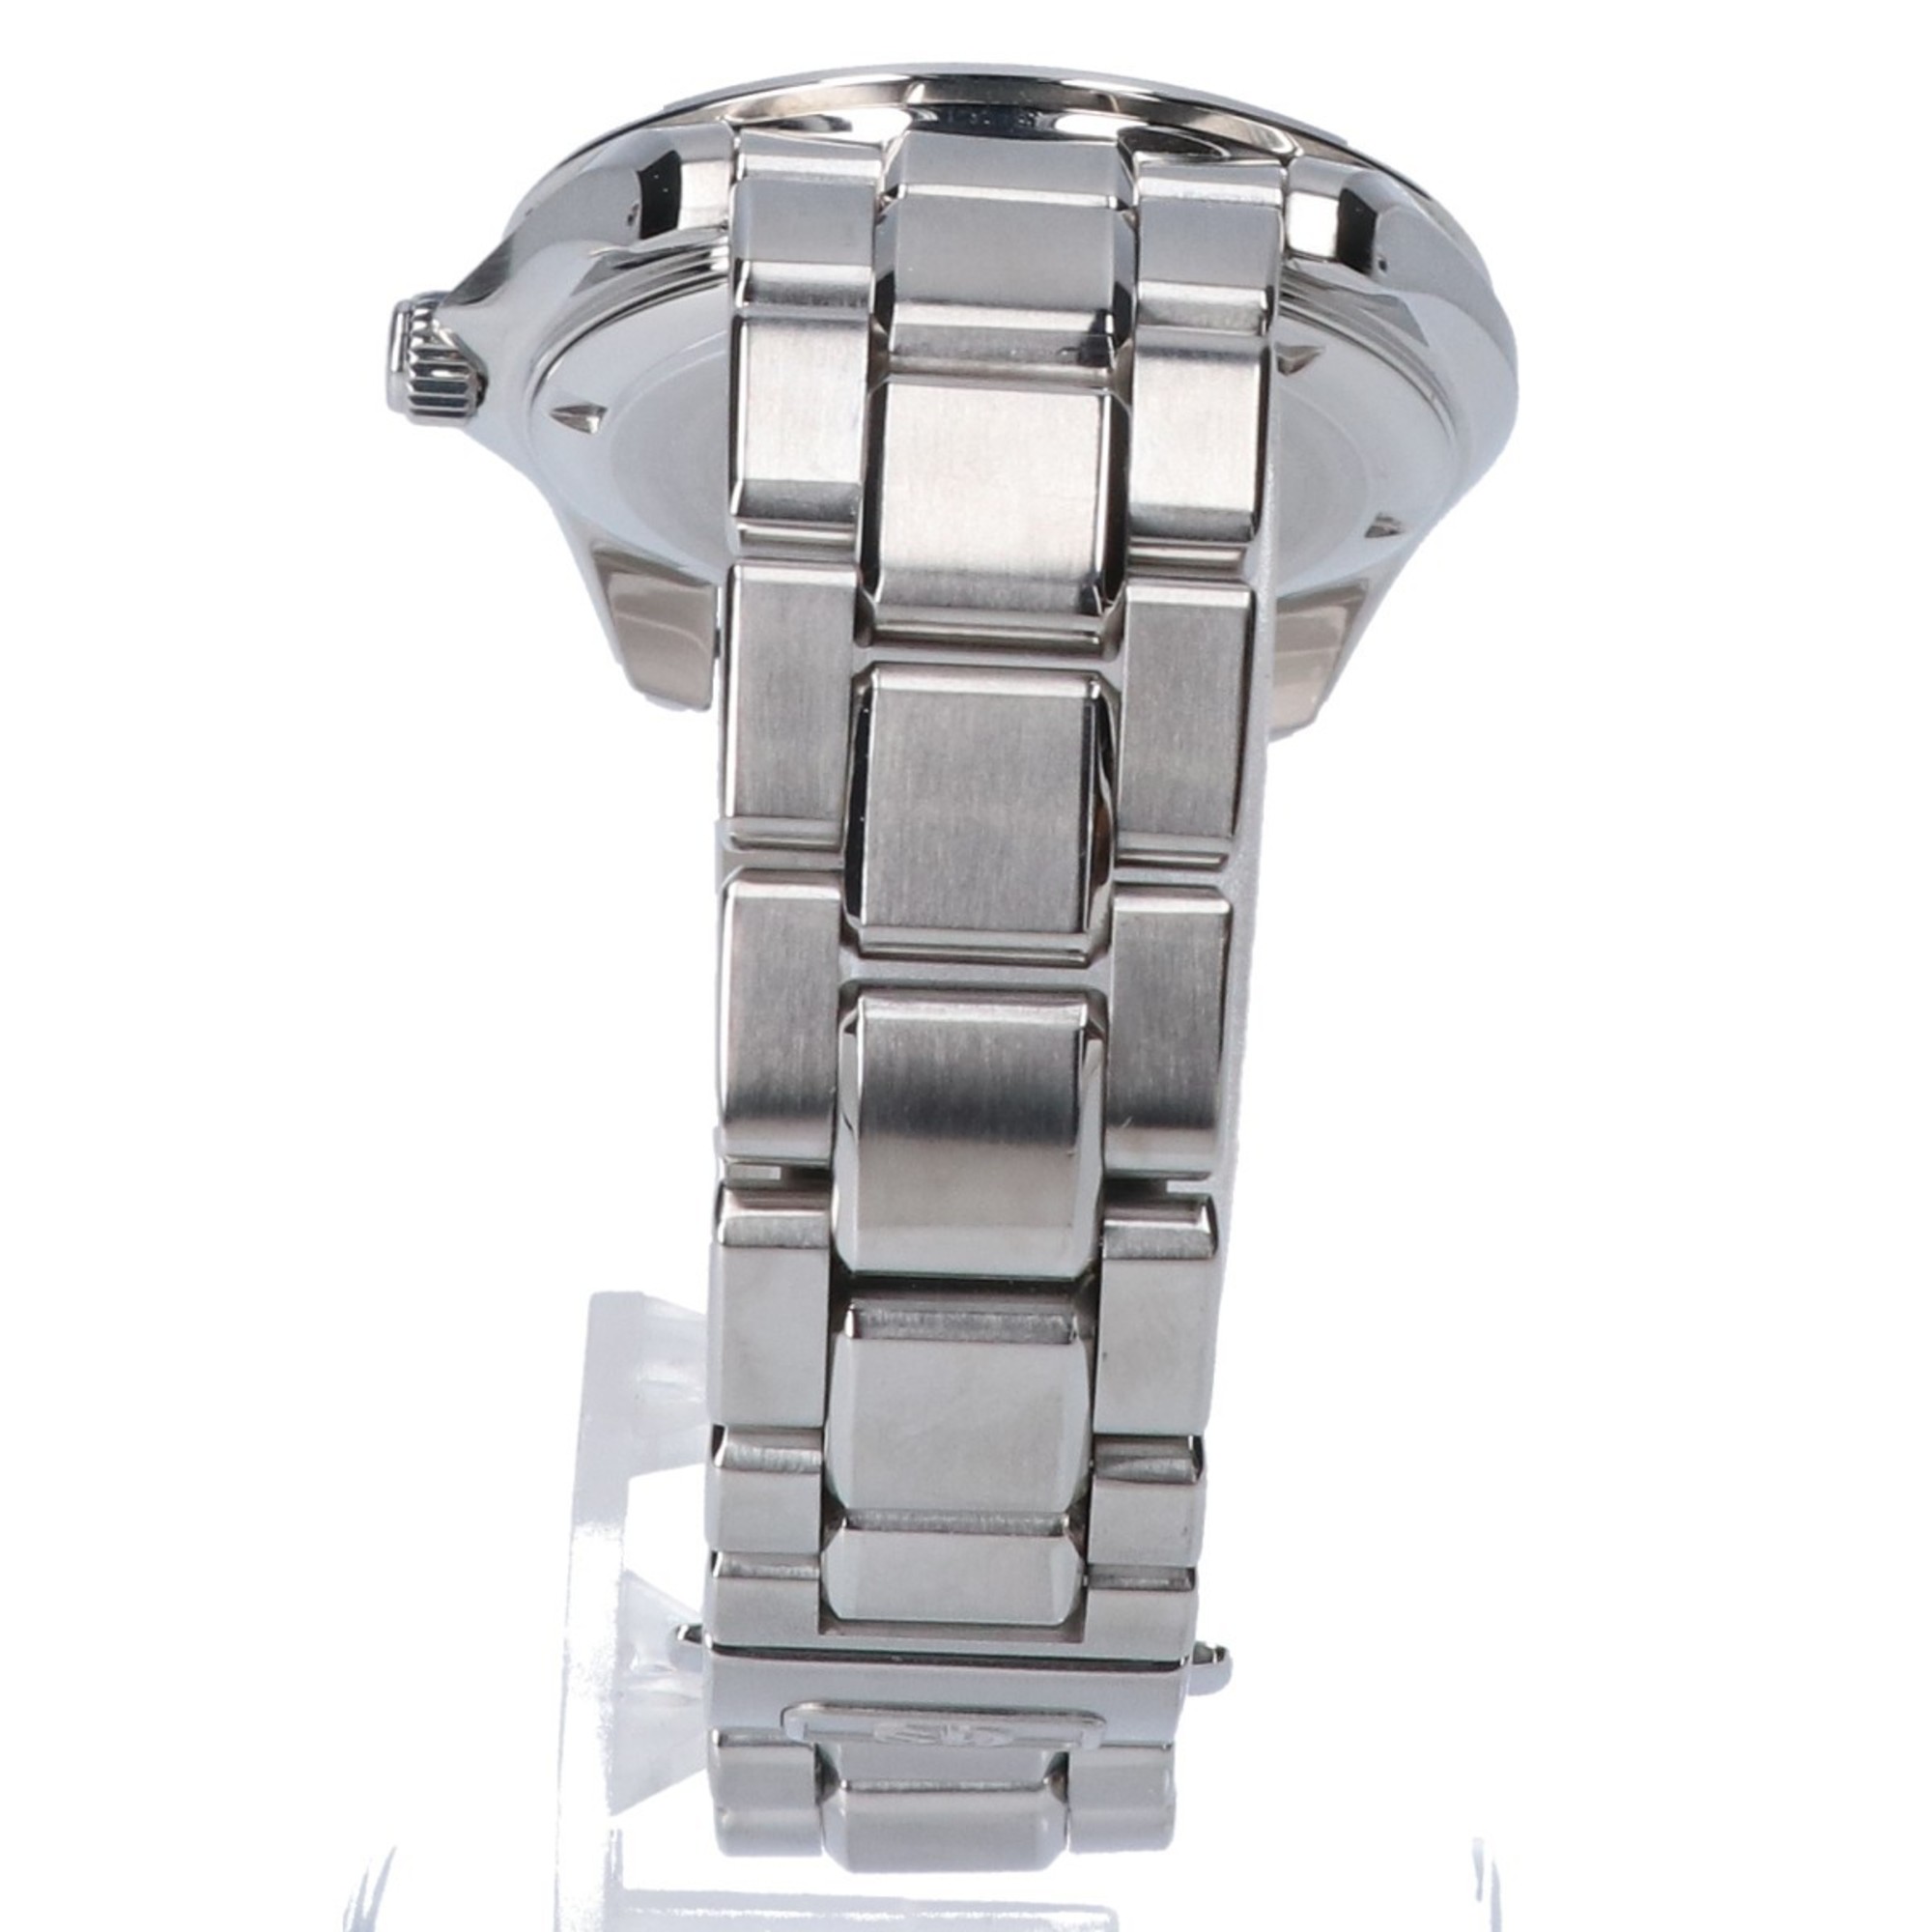 Grand Seiko 8J56-8020 Date Quartz Watch Silver Men's